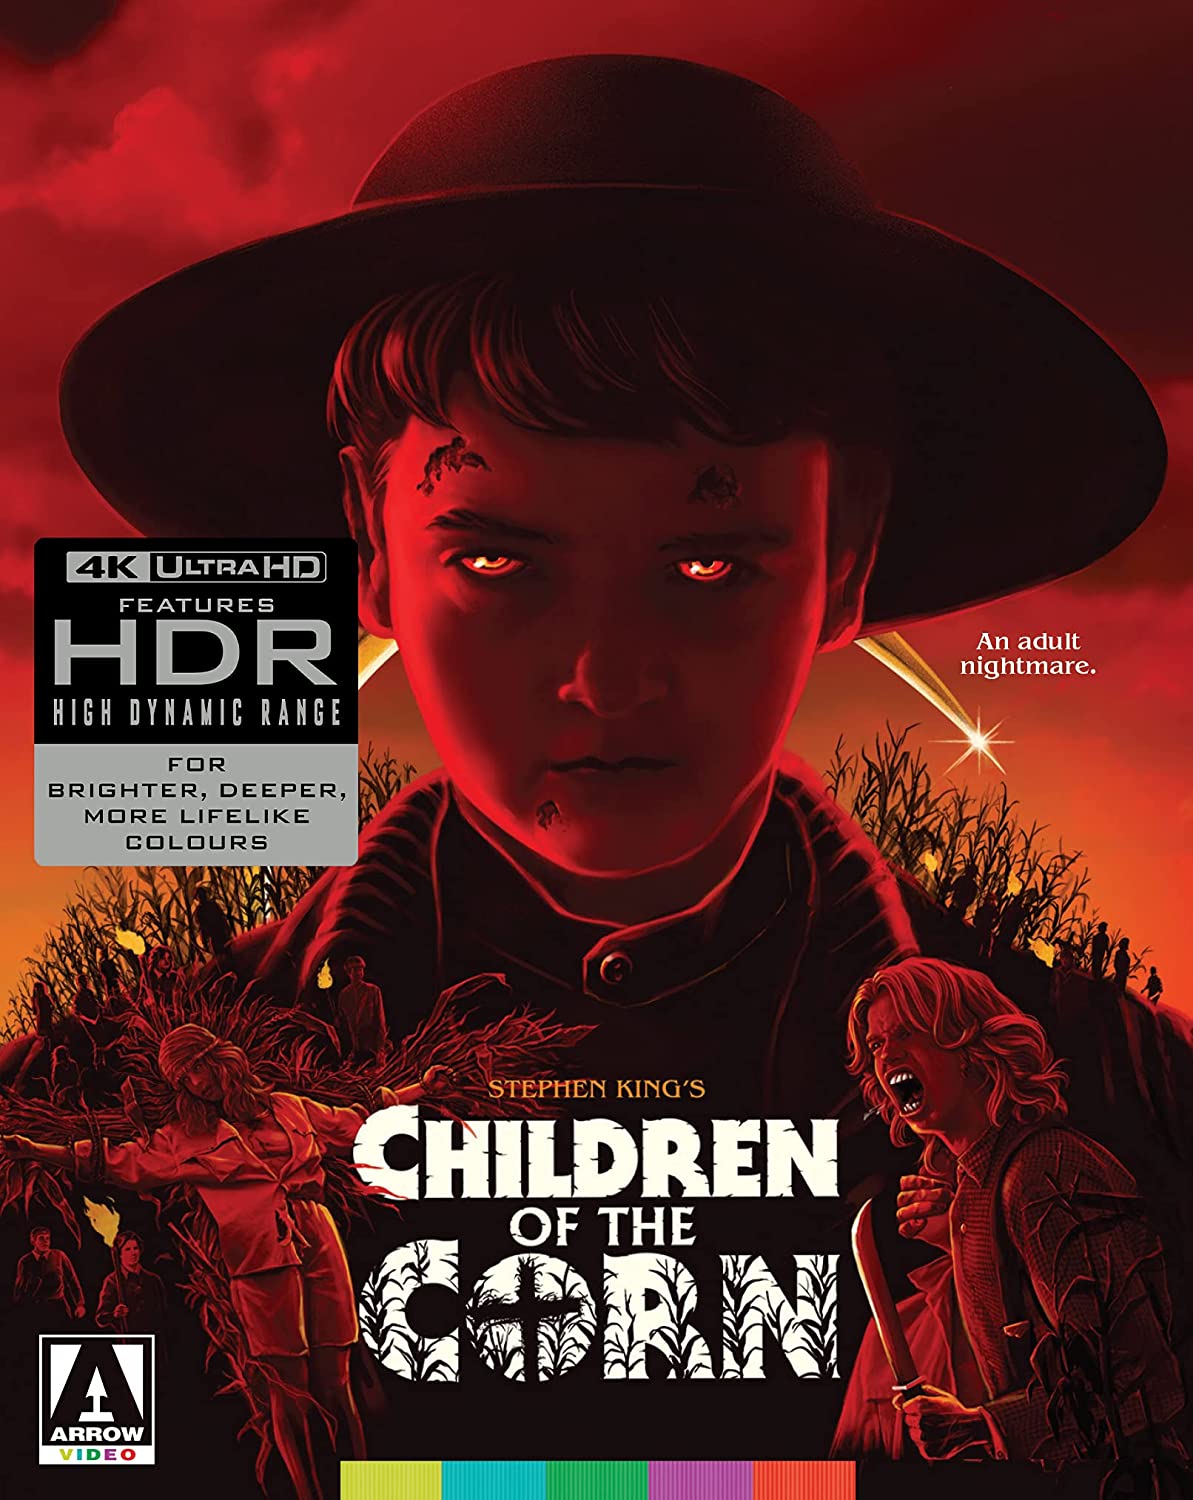 Children of the Corn 4k Blu-ray